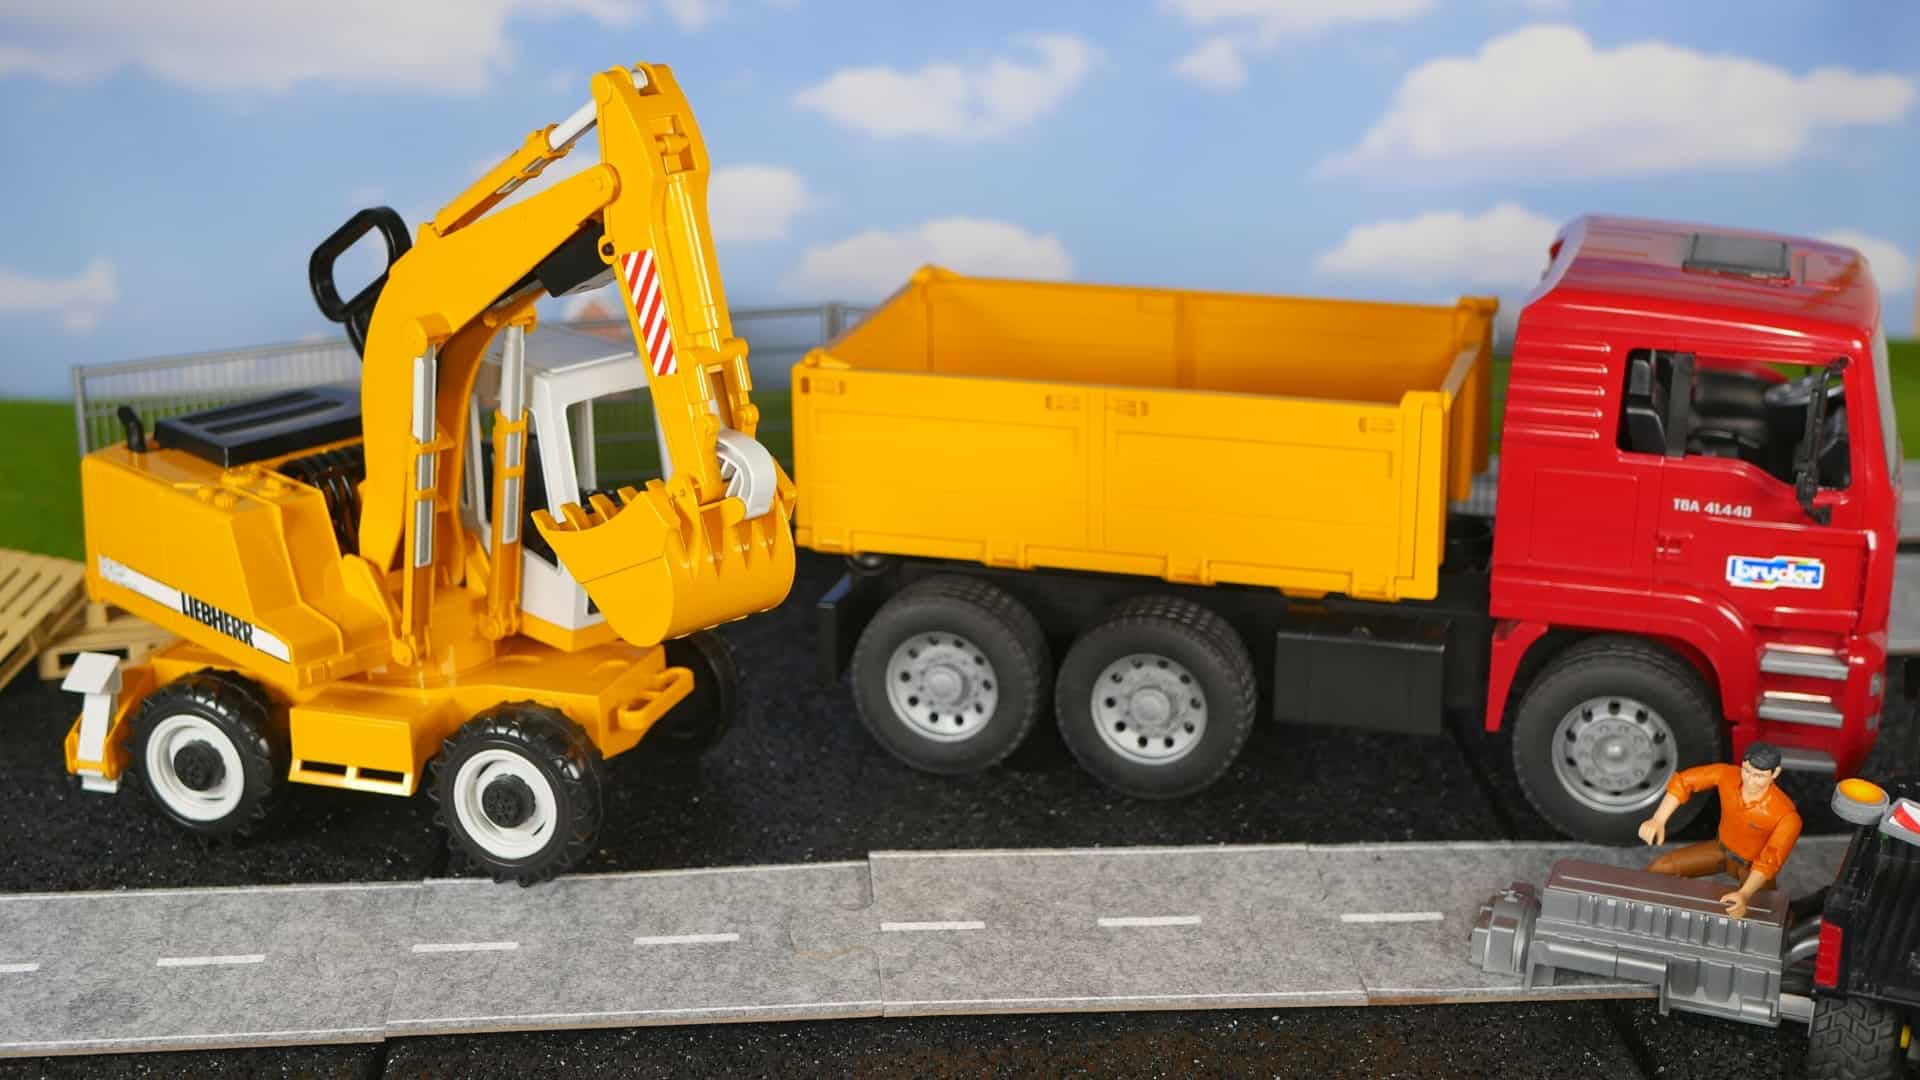 Bruder MAN dump truck with Liebherr excavator combination package